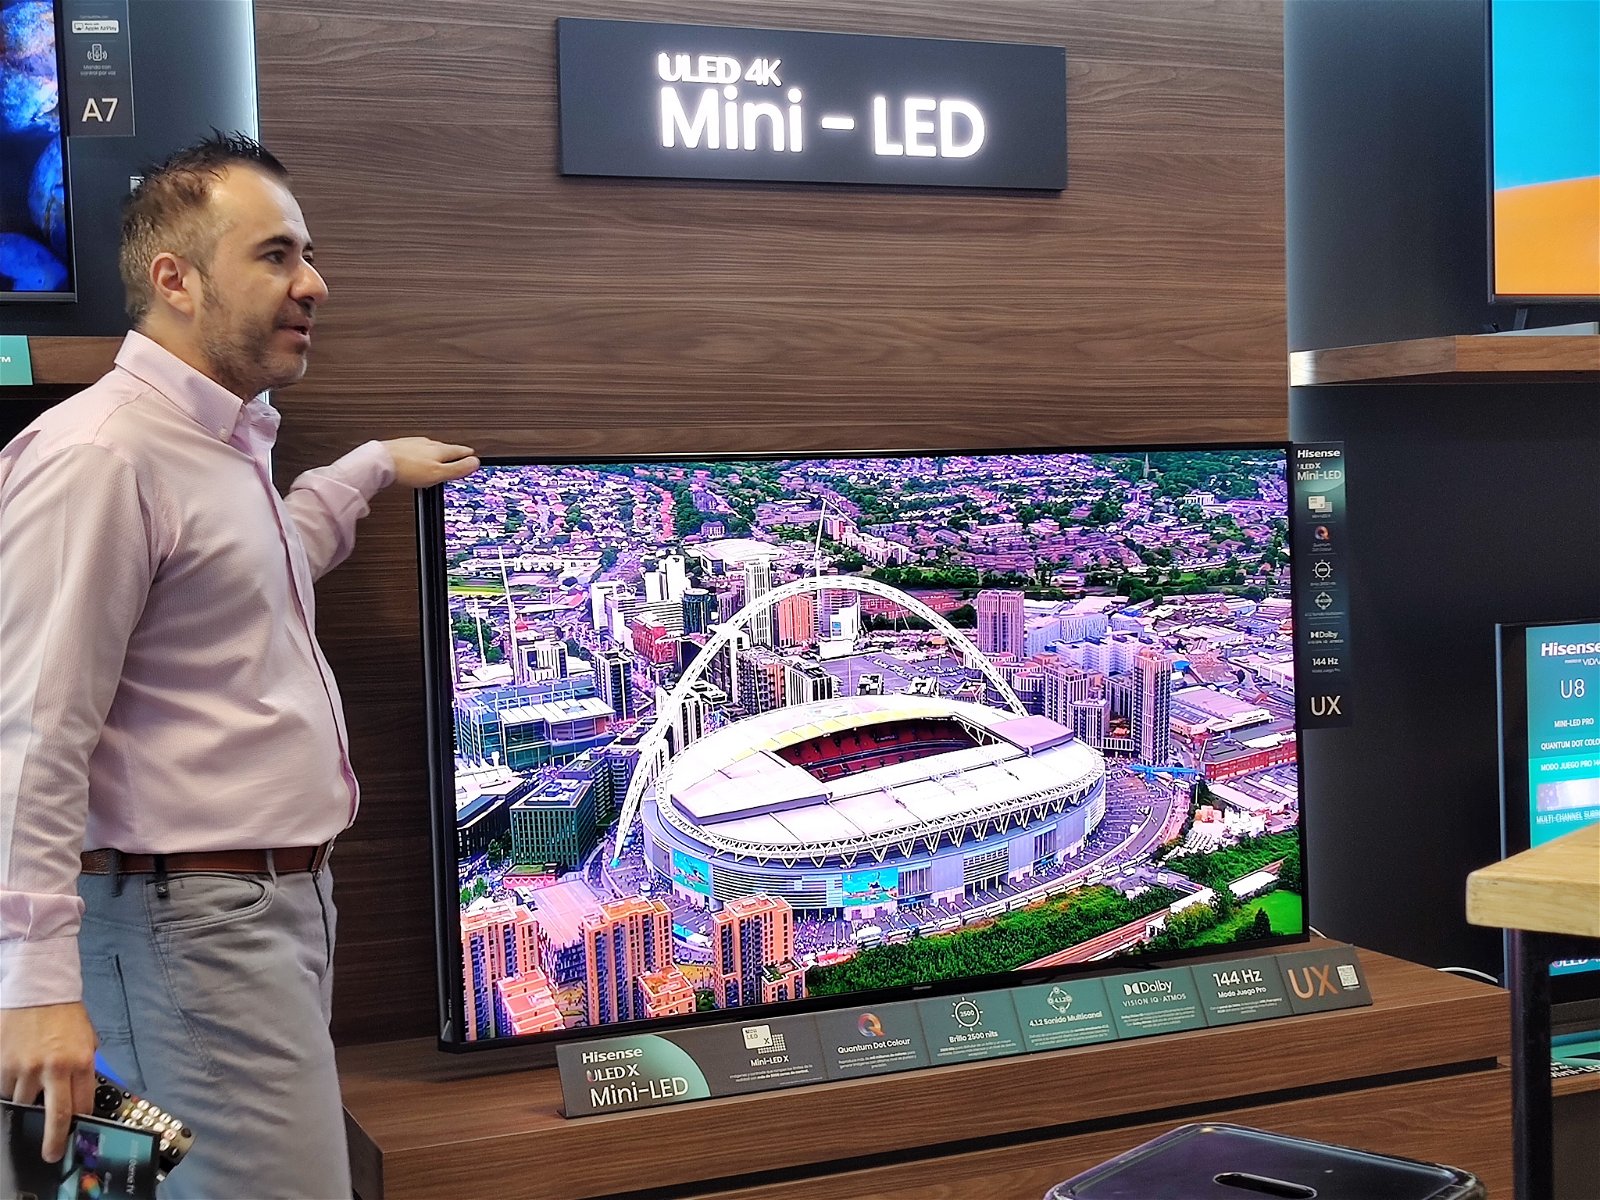 Hisense rompe el mercado con sus nuevas televisiones Mini-LED